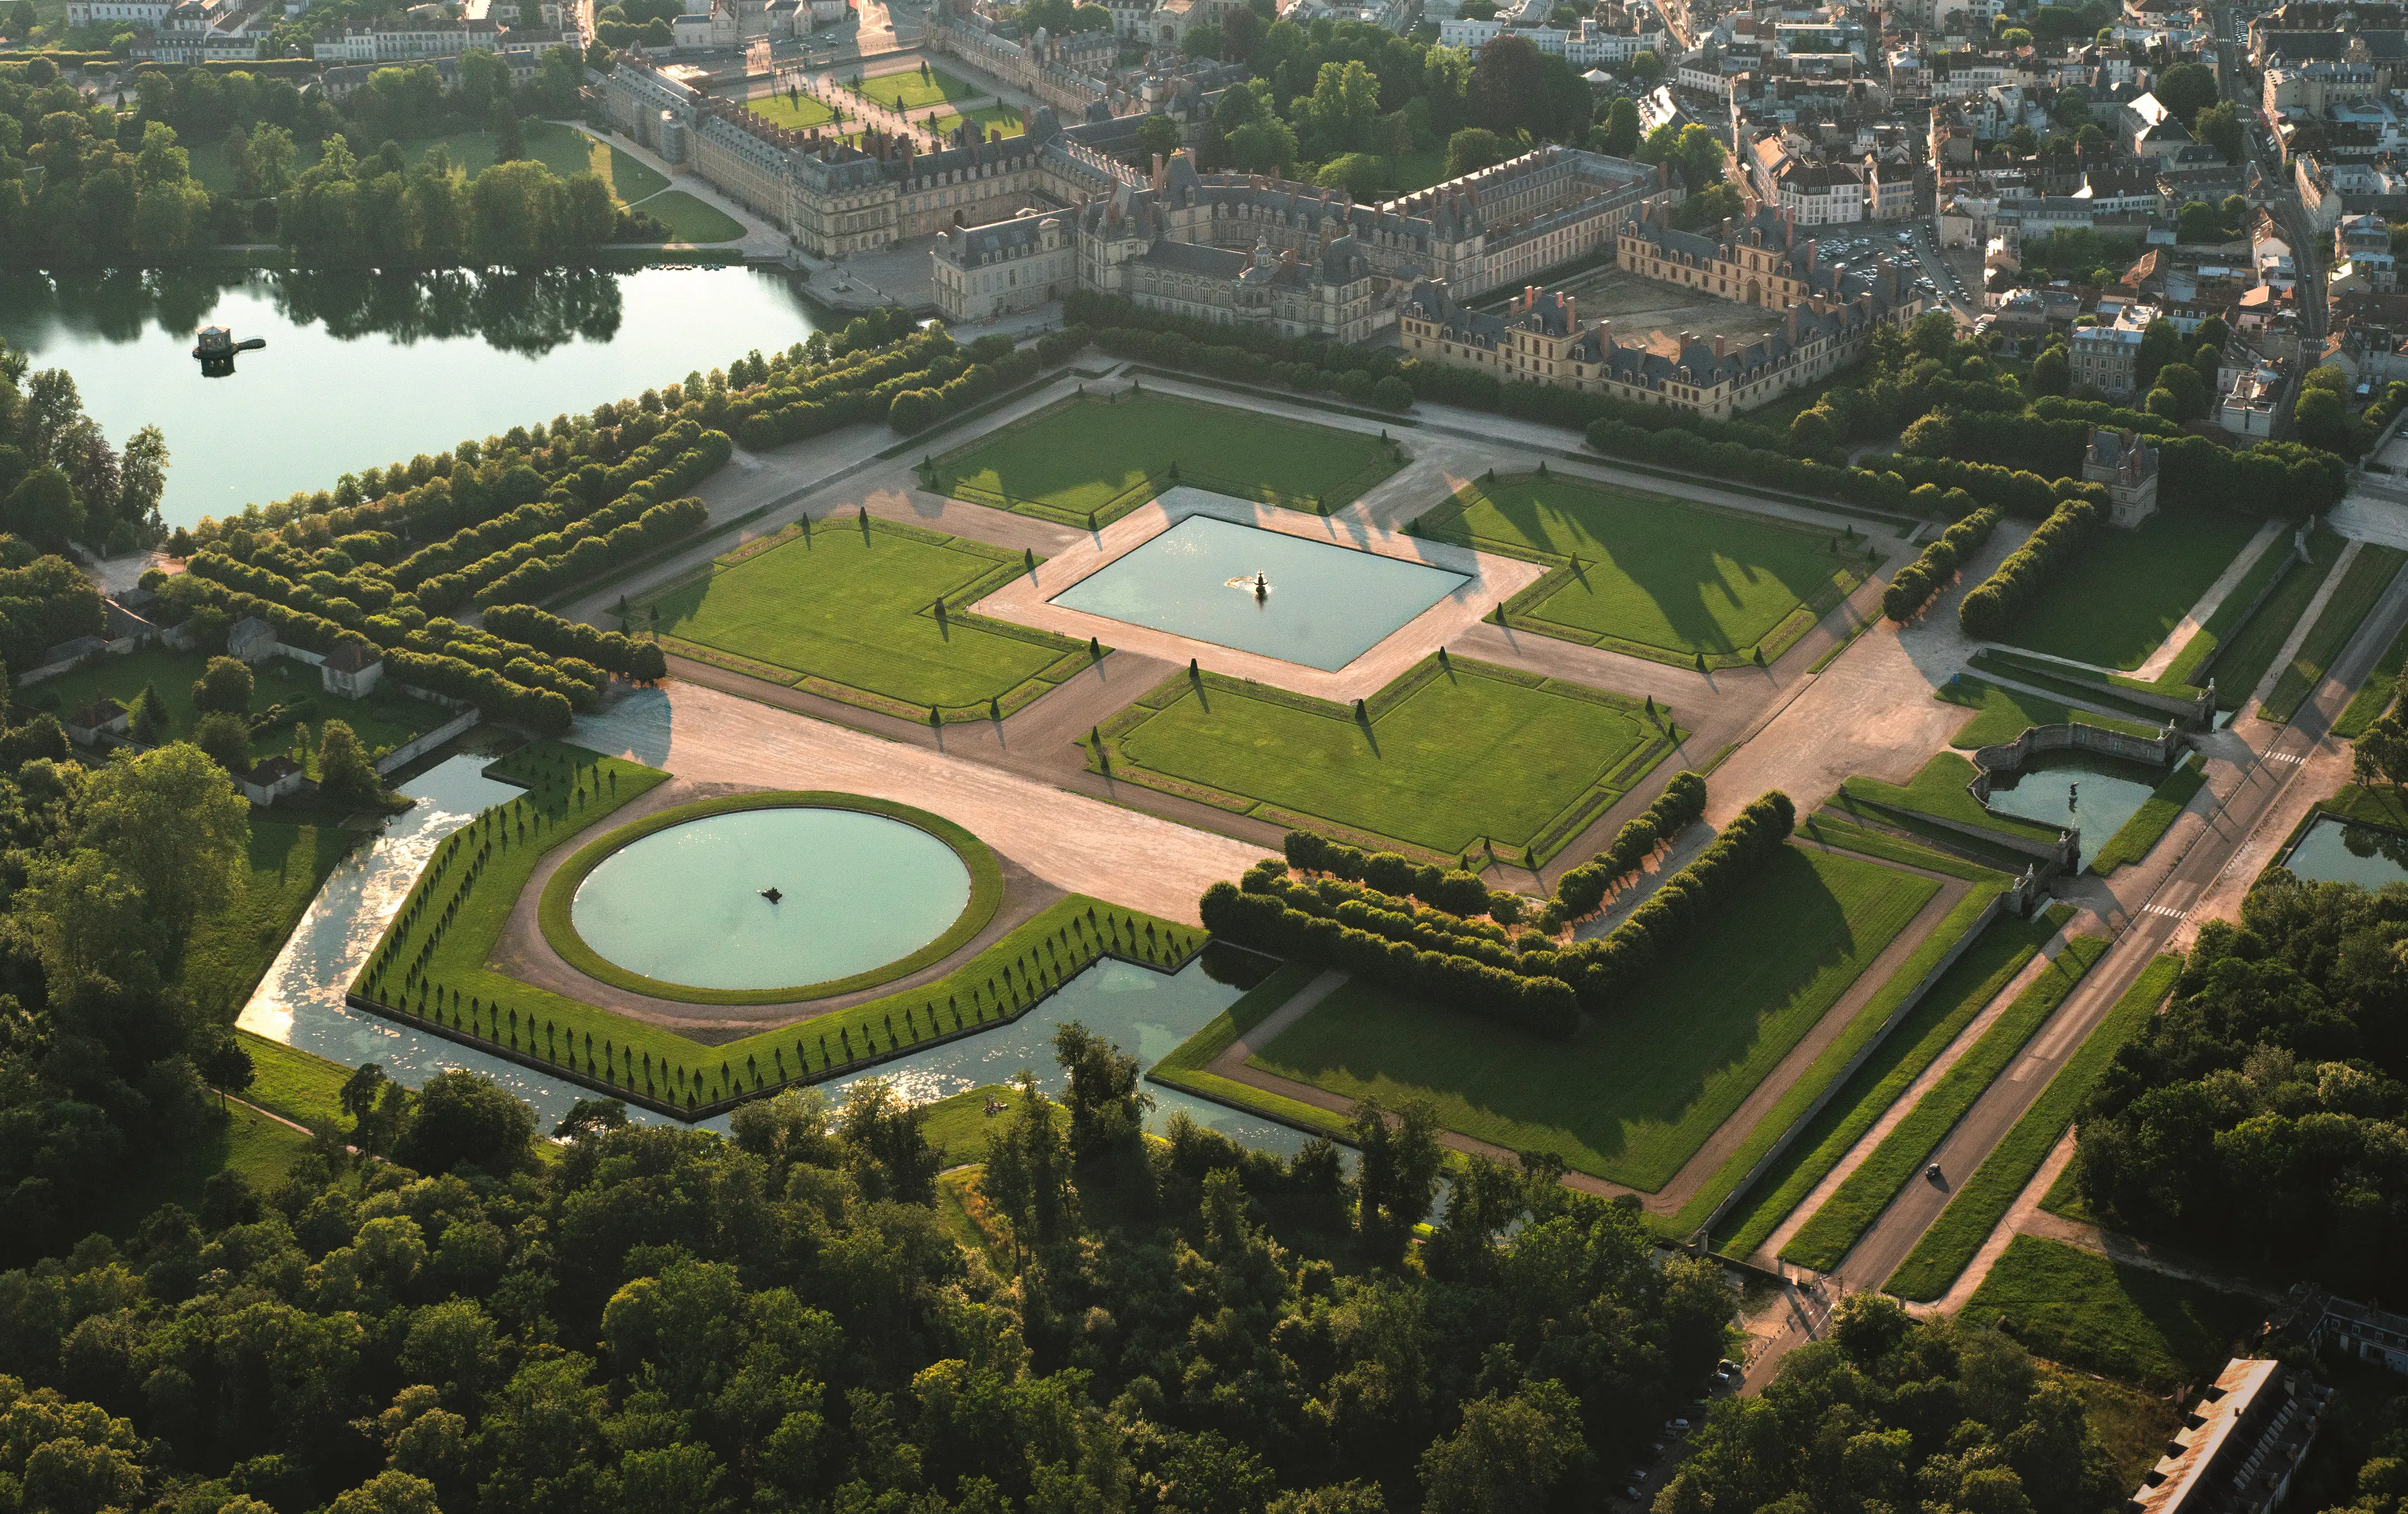 Le chateau de Fontainebleau